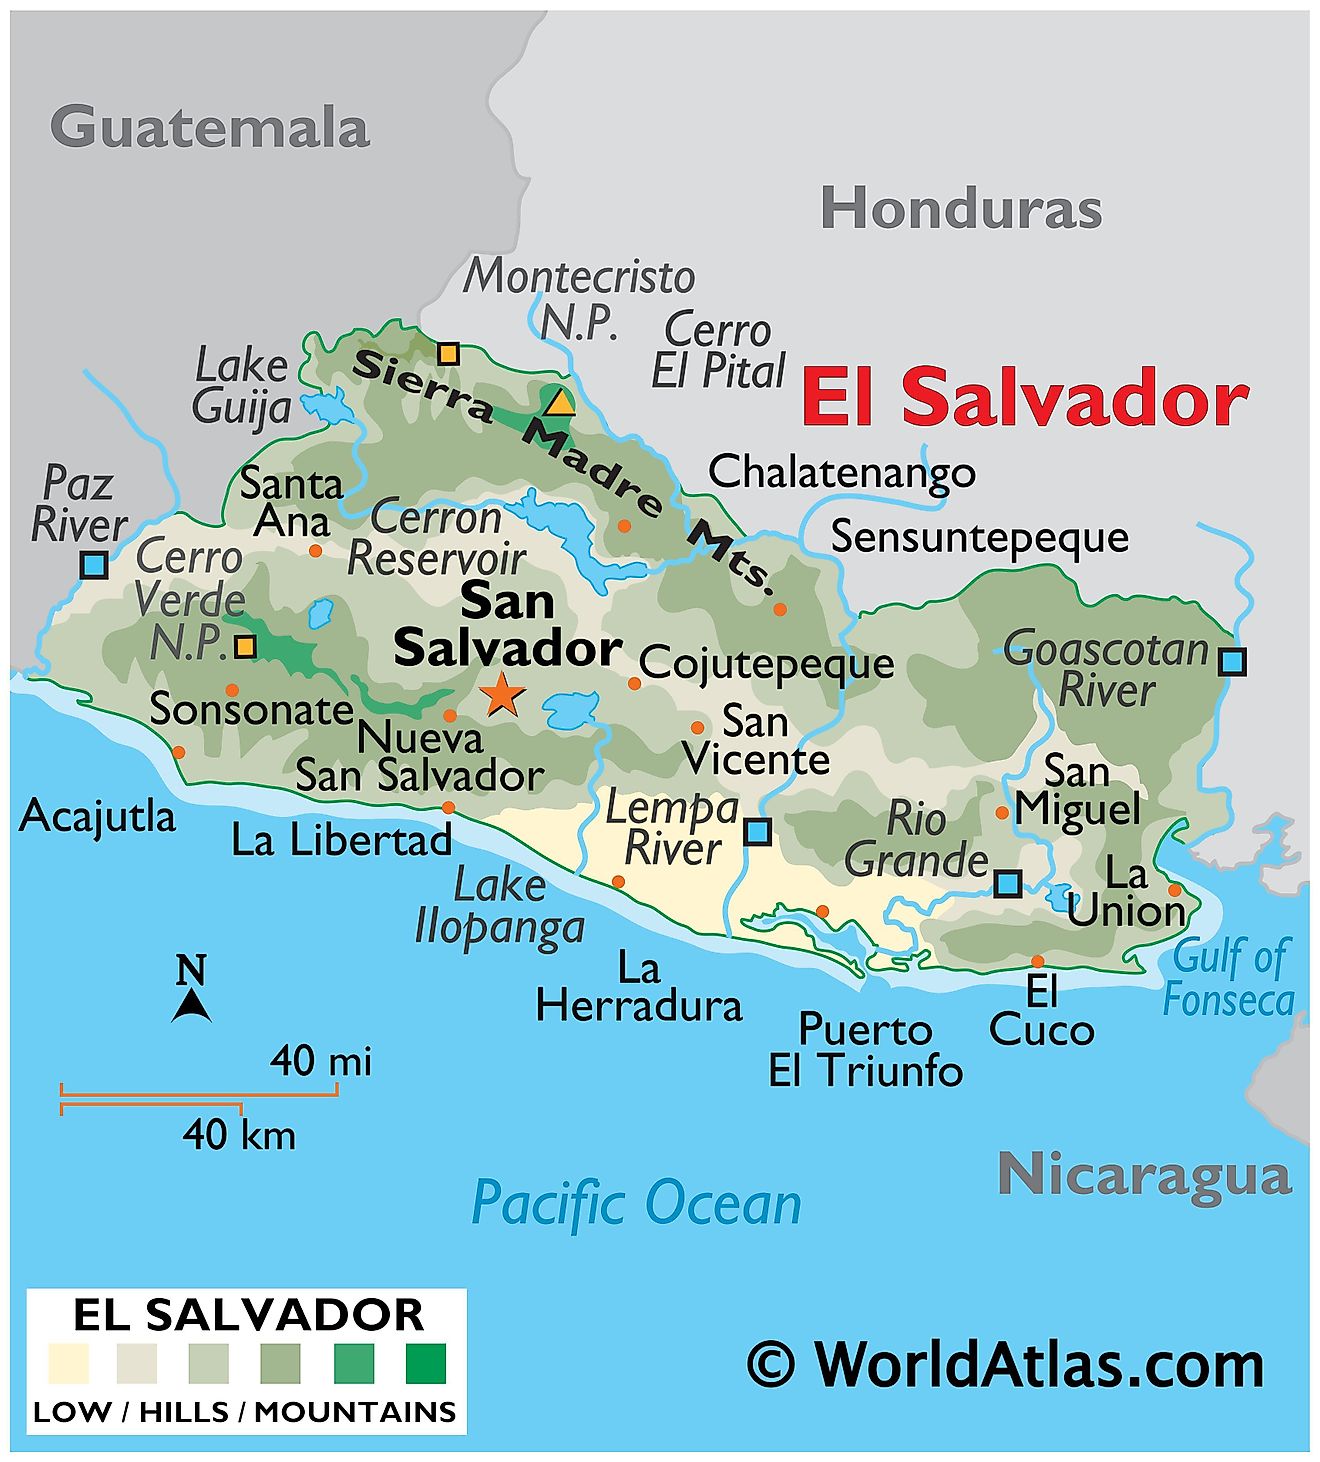 Mapa físico de El Salvador que muestra el relieve, los principales ríos y cadenas montañosas, los asentamientos importantes, los países limítrofes, etc.